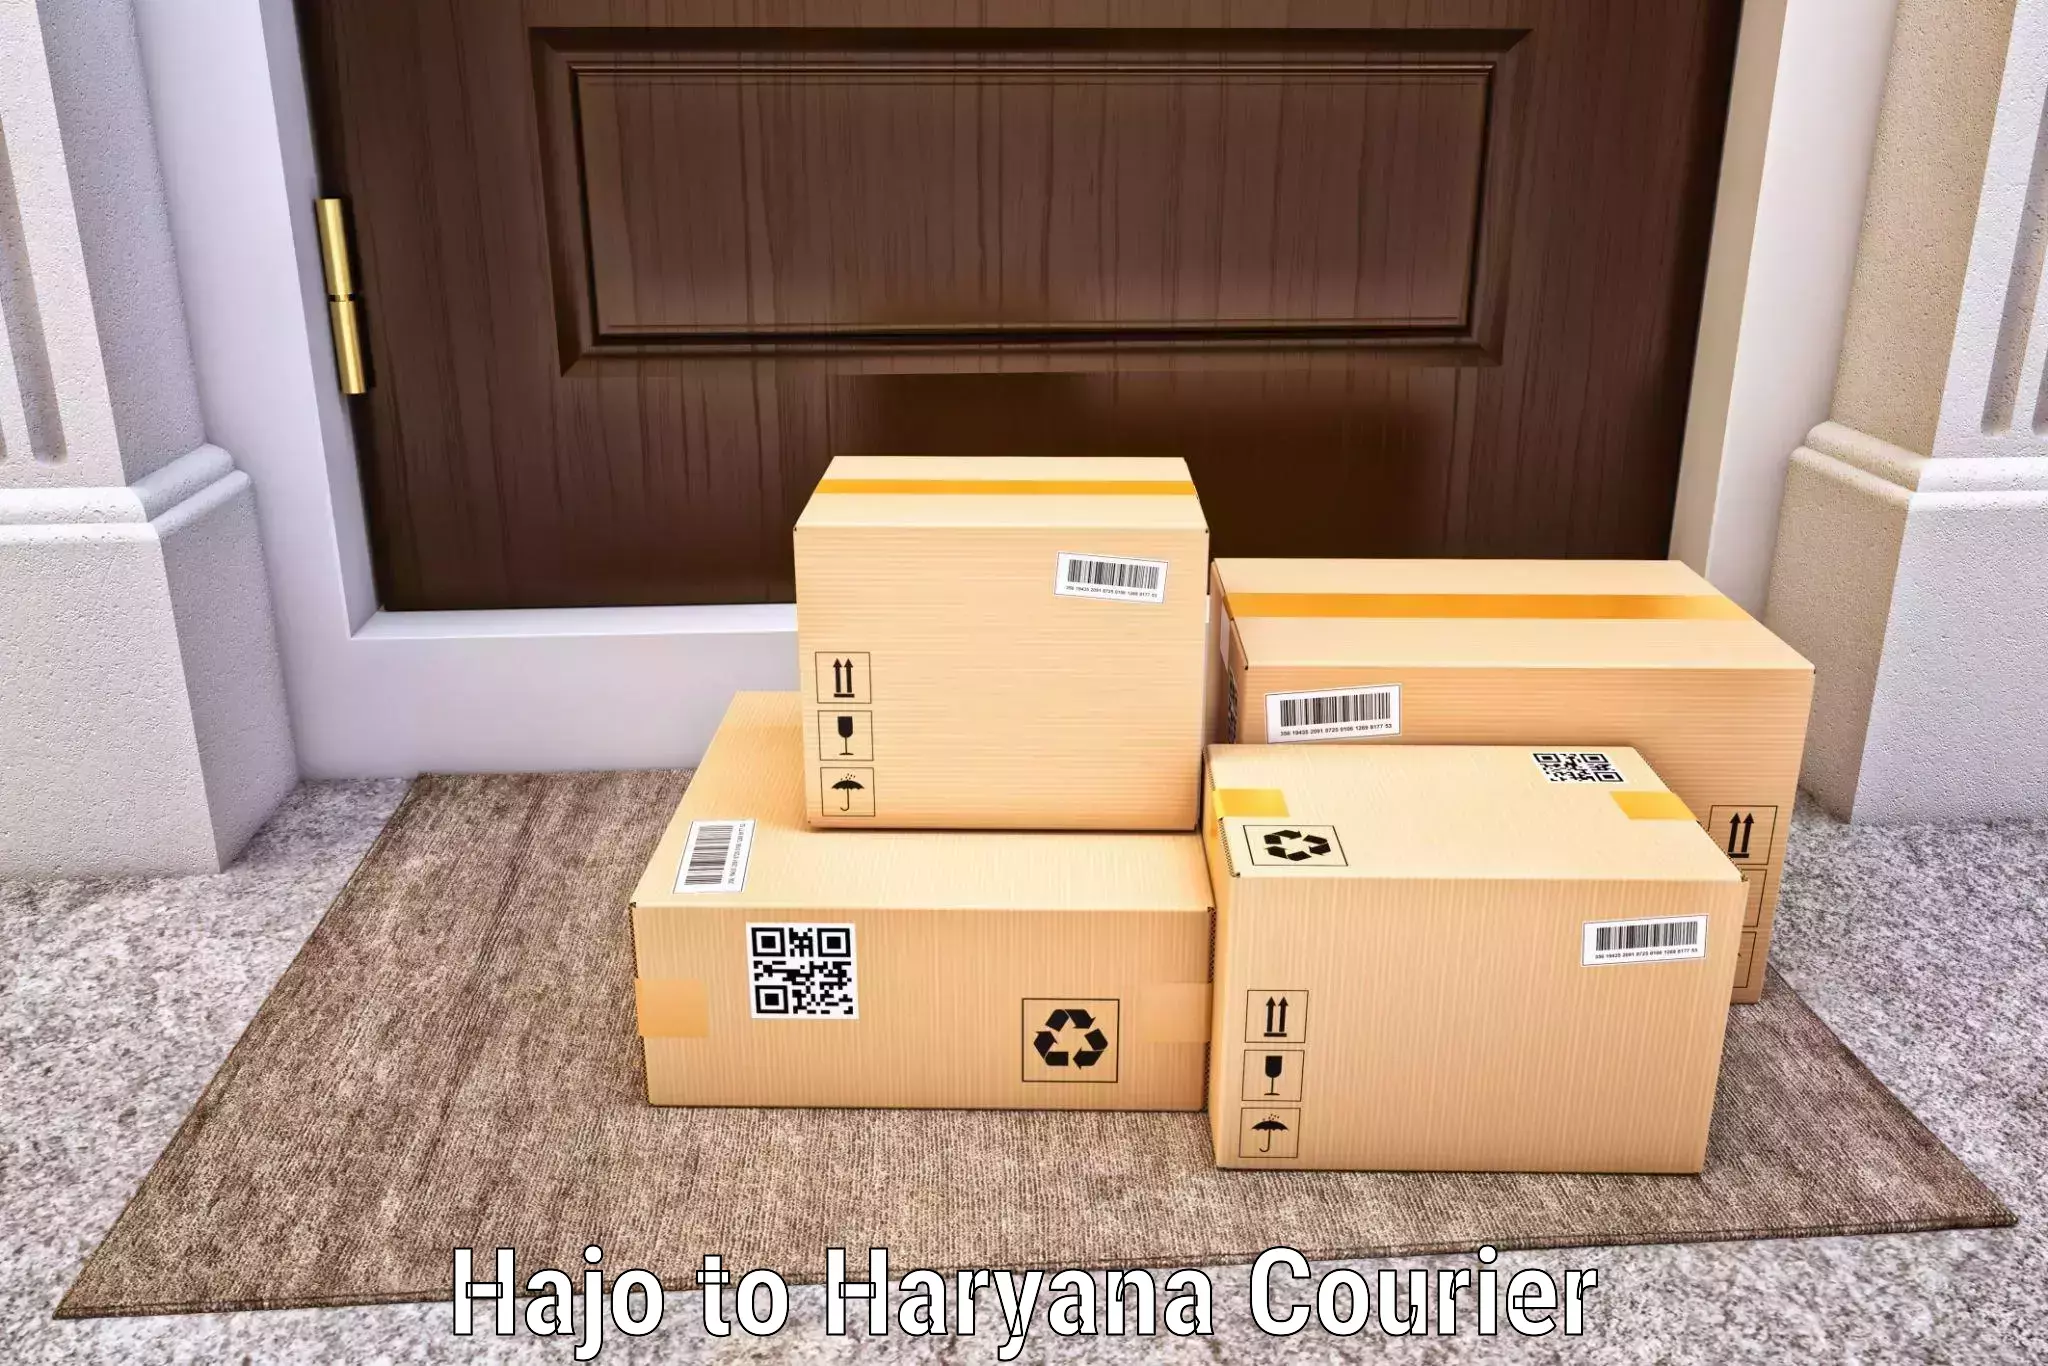 Full-service courier options Hajo to Haryana